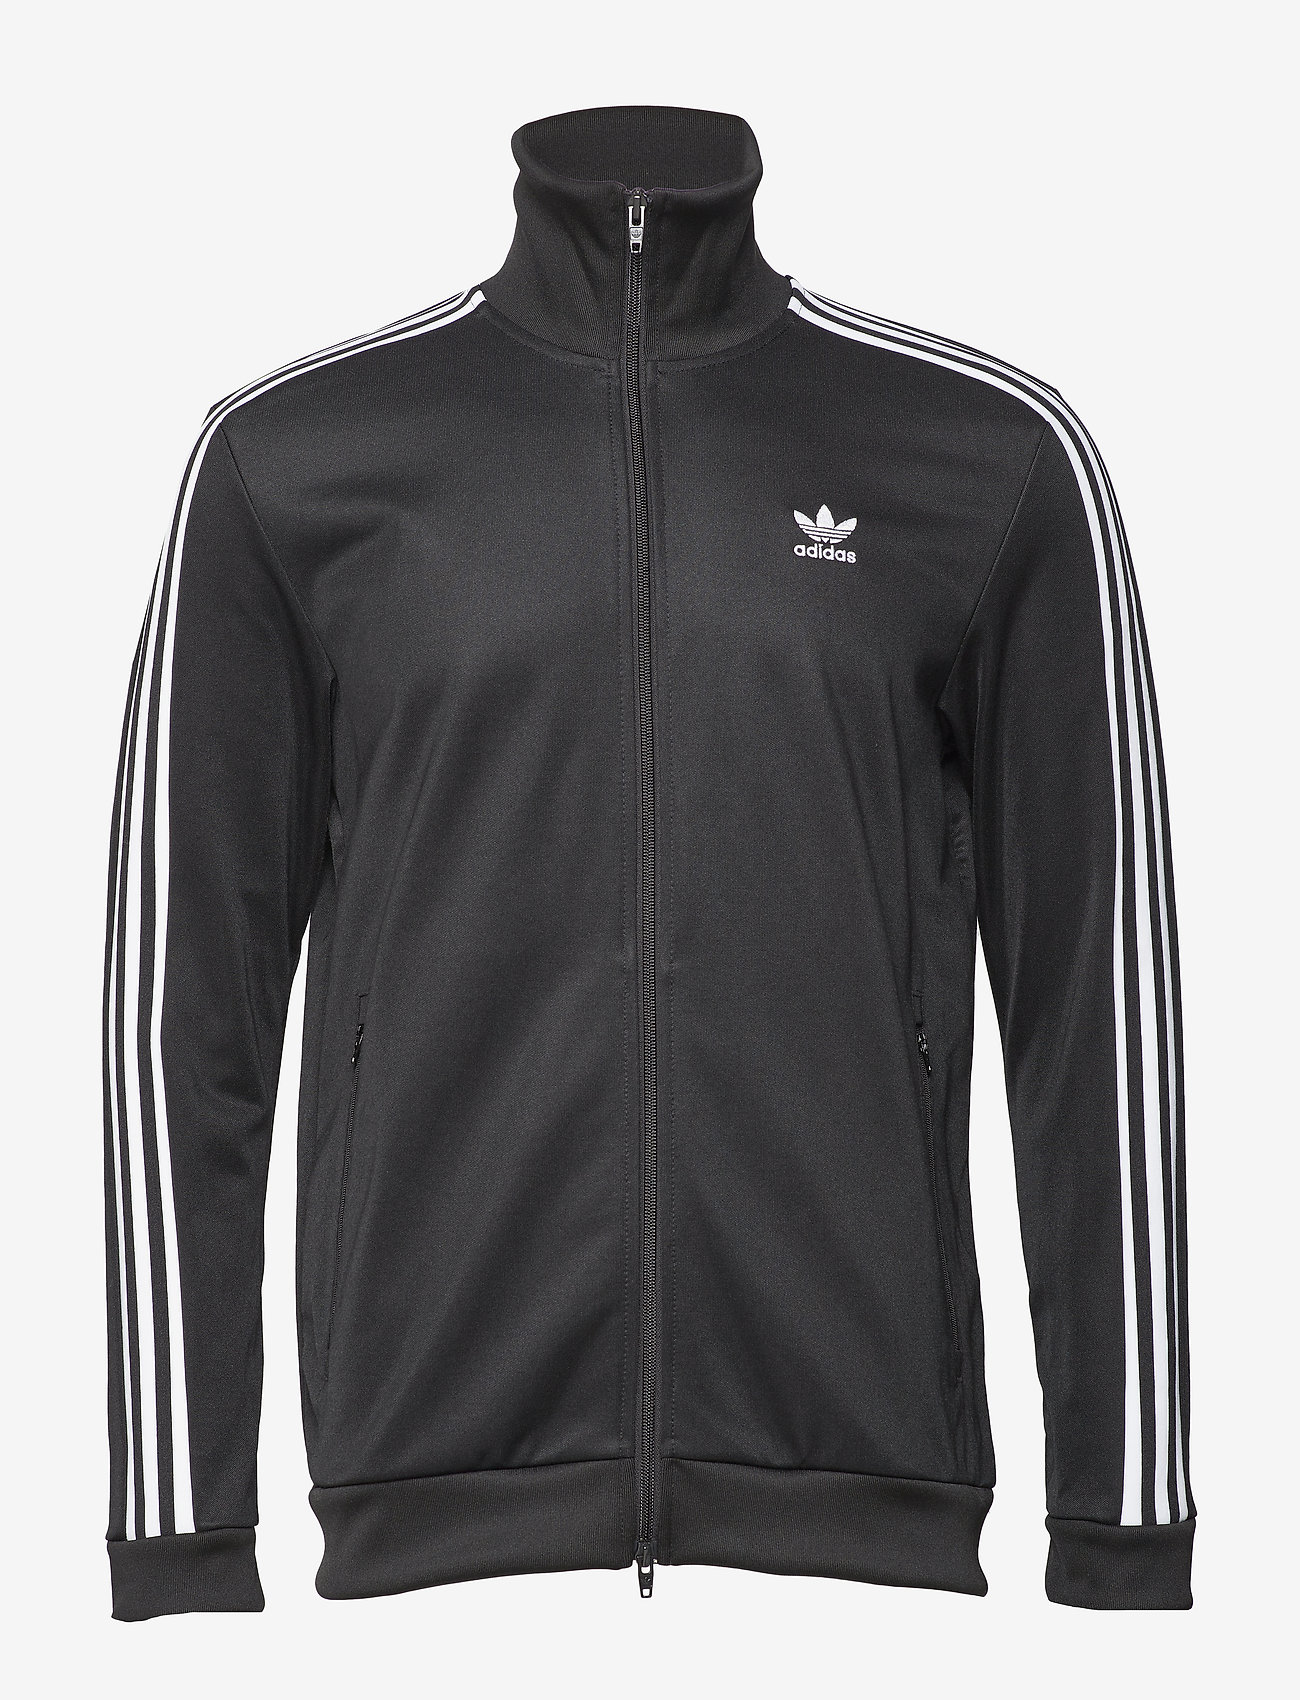 Beckenbauer Tt (Black) (52.46 €) - adidas Originals - | Boozt.com